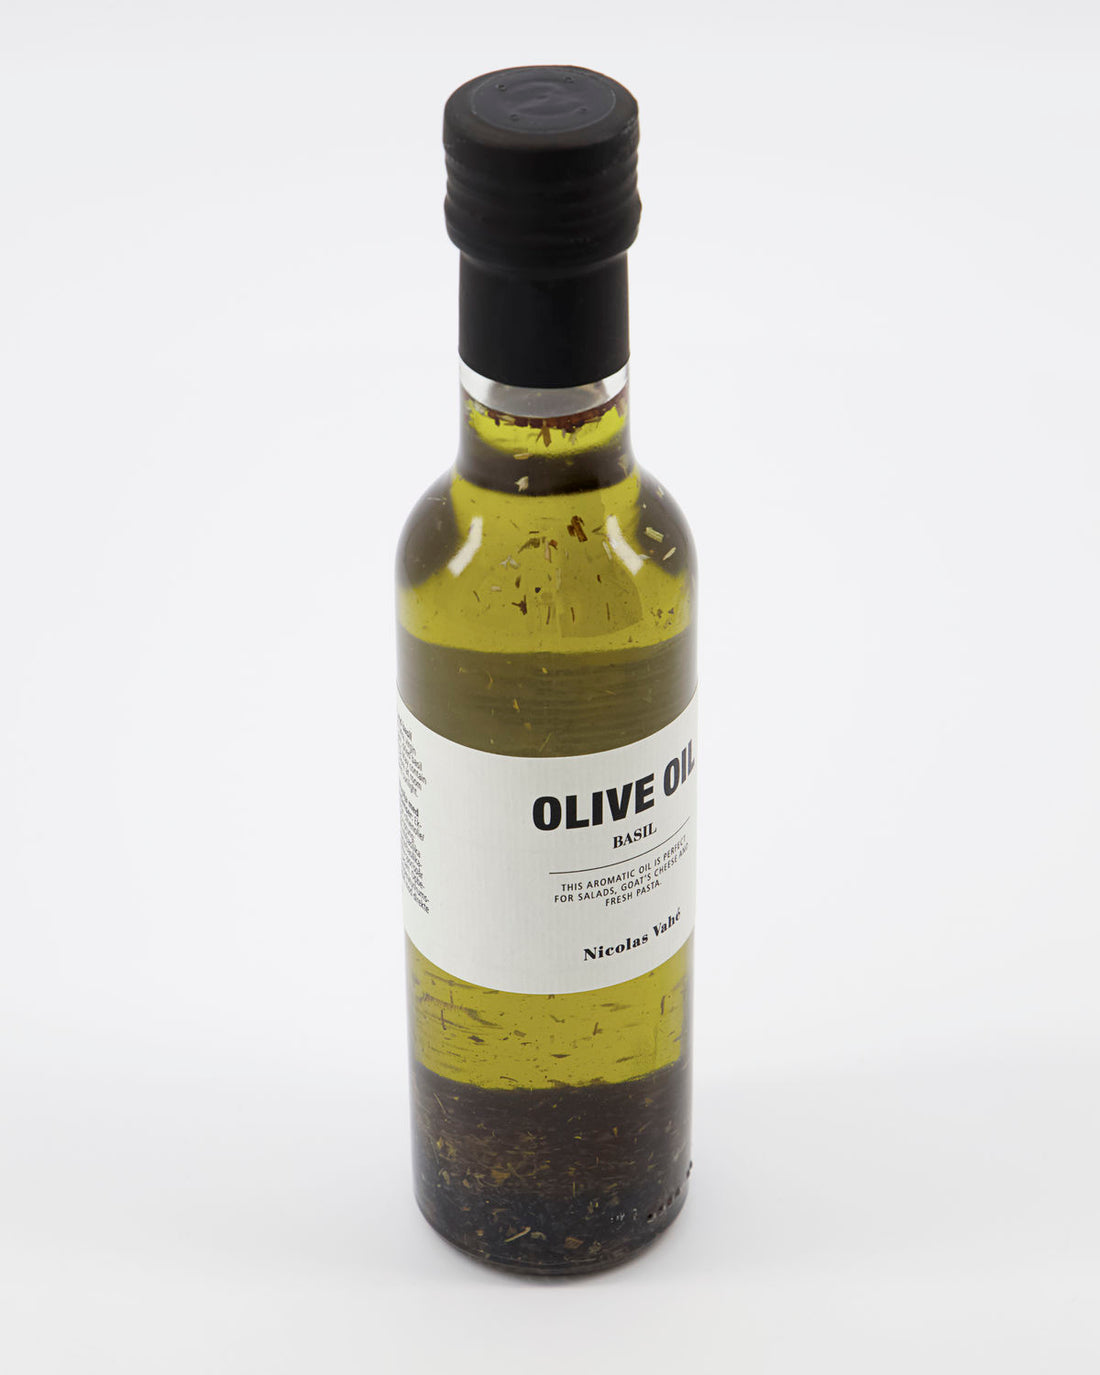 Nikolas Vahé - Olive oil with basil